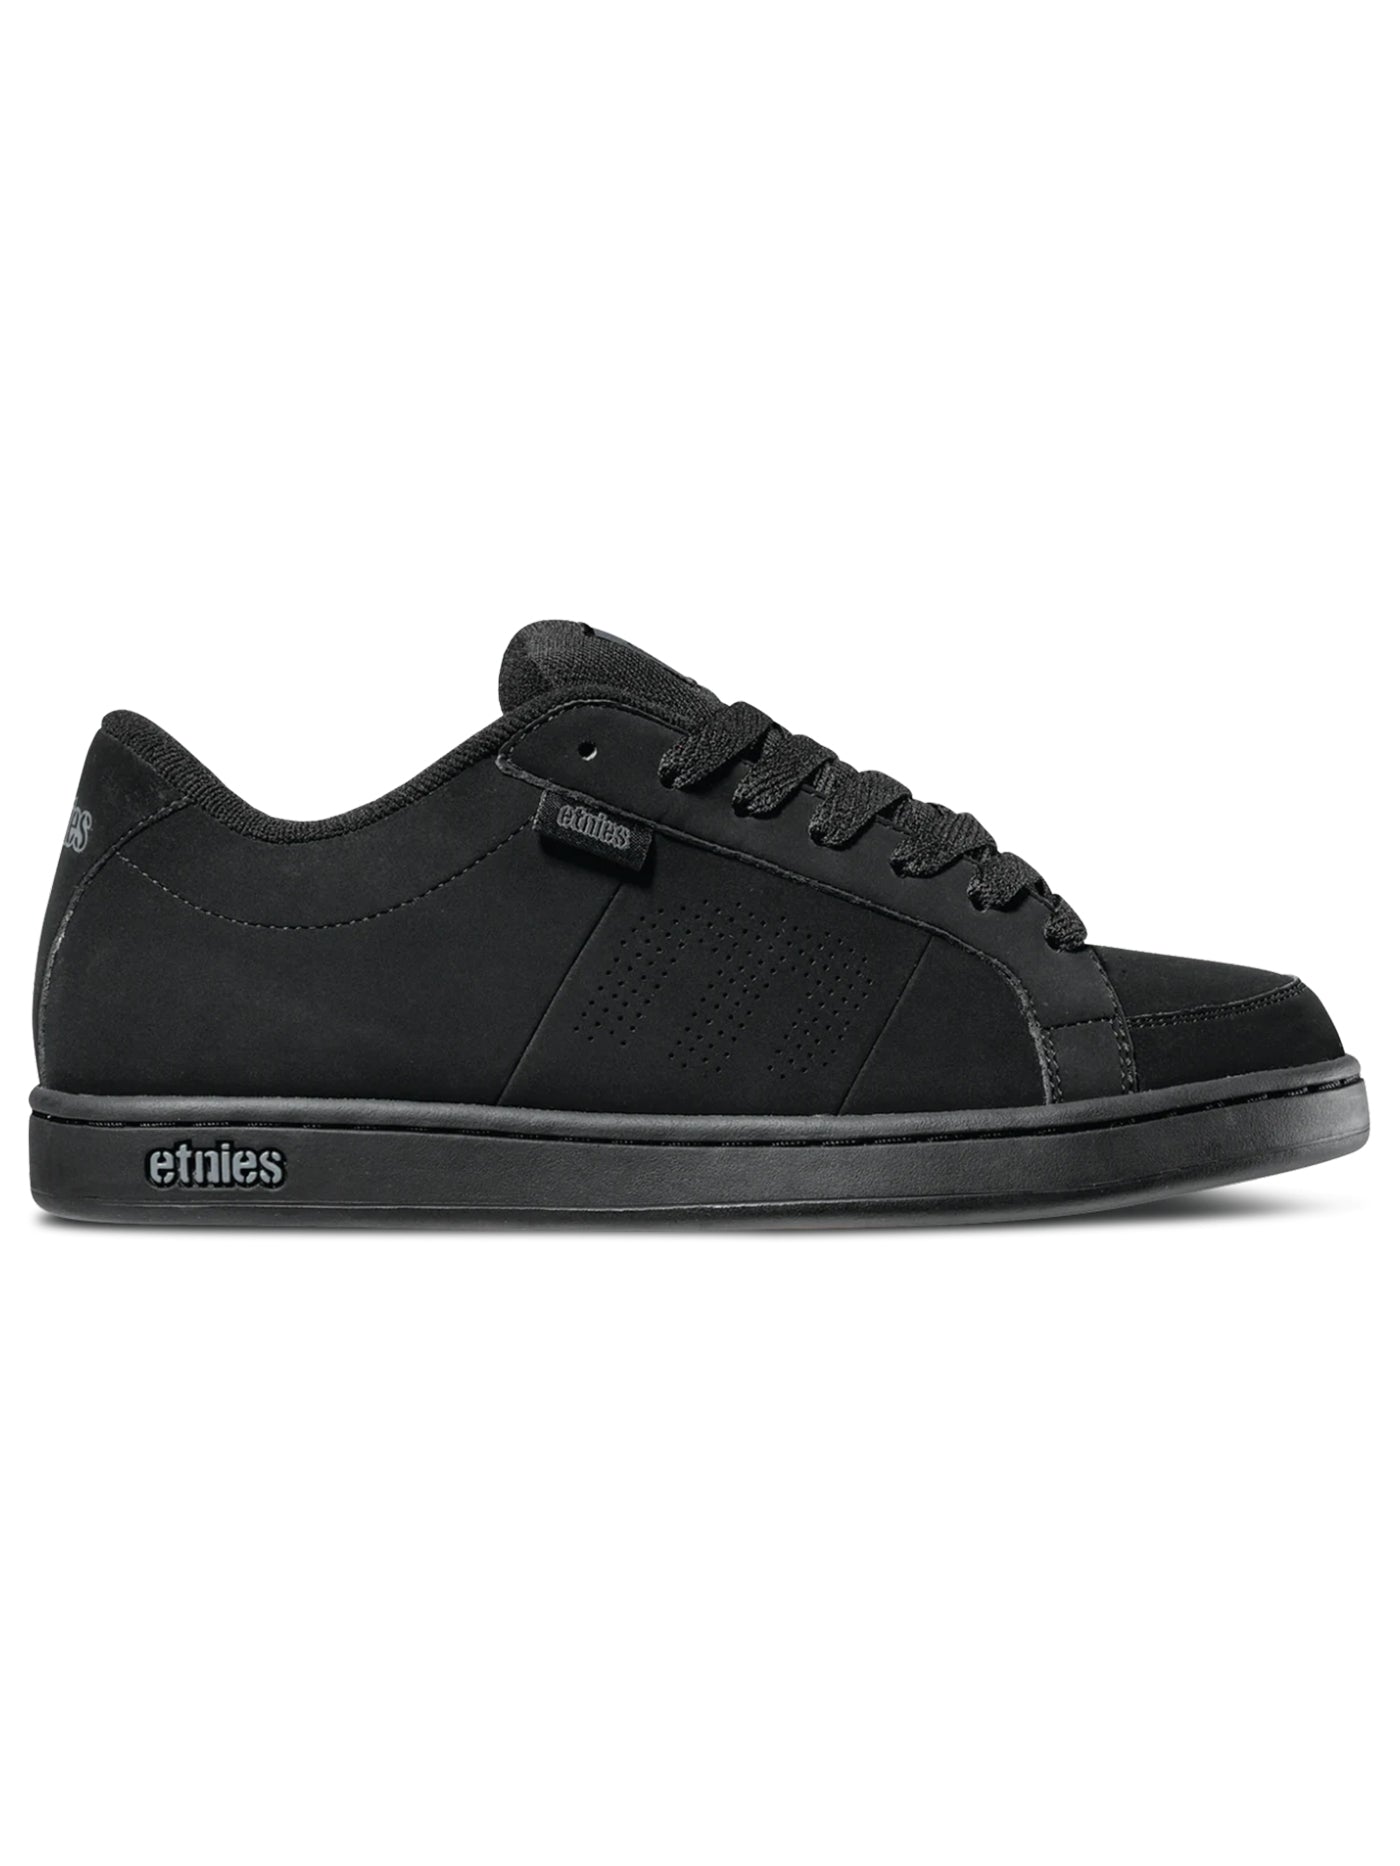 Etnies Kingpin Black/Black Shoes